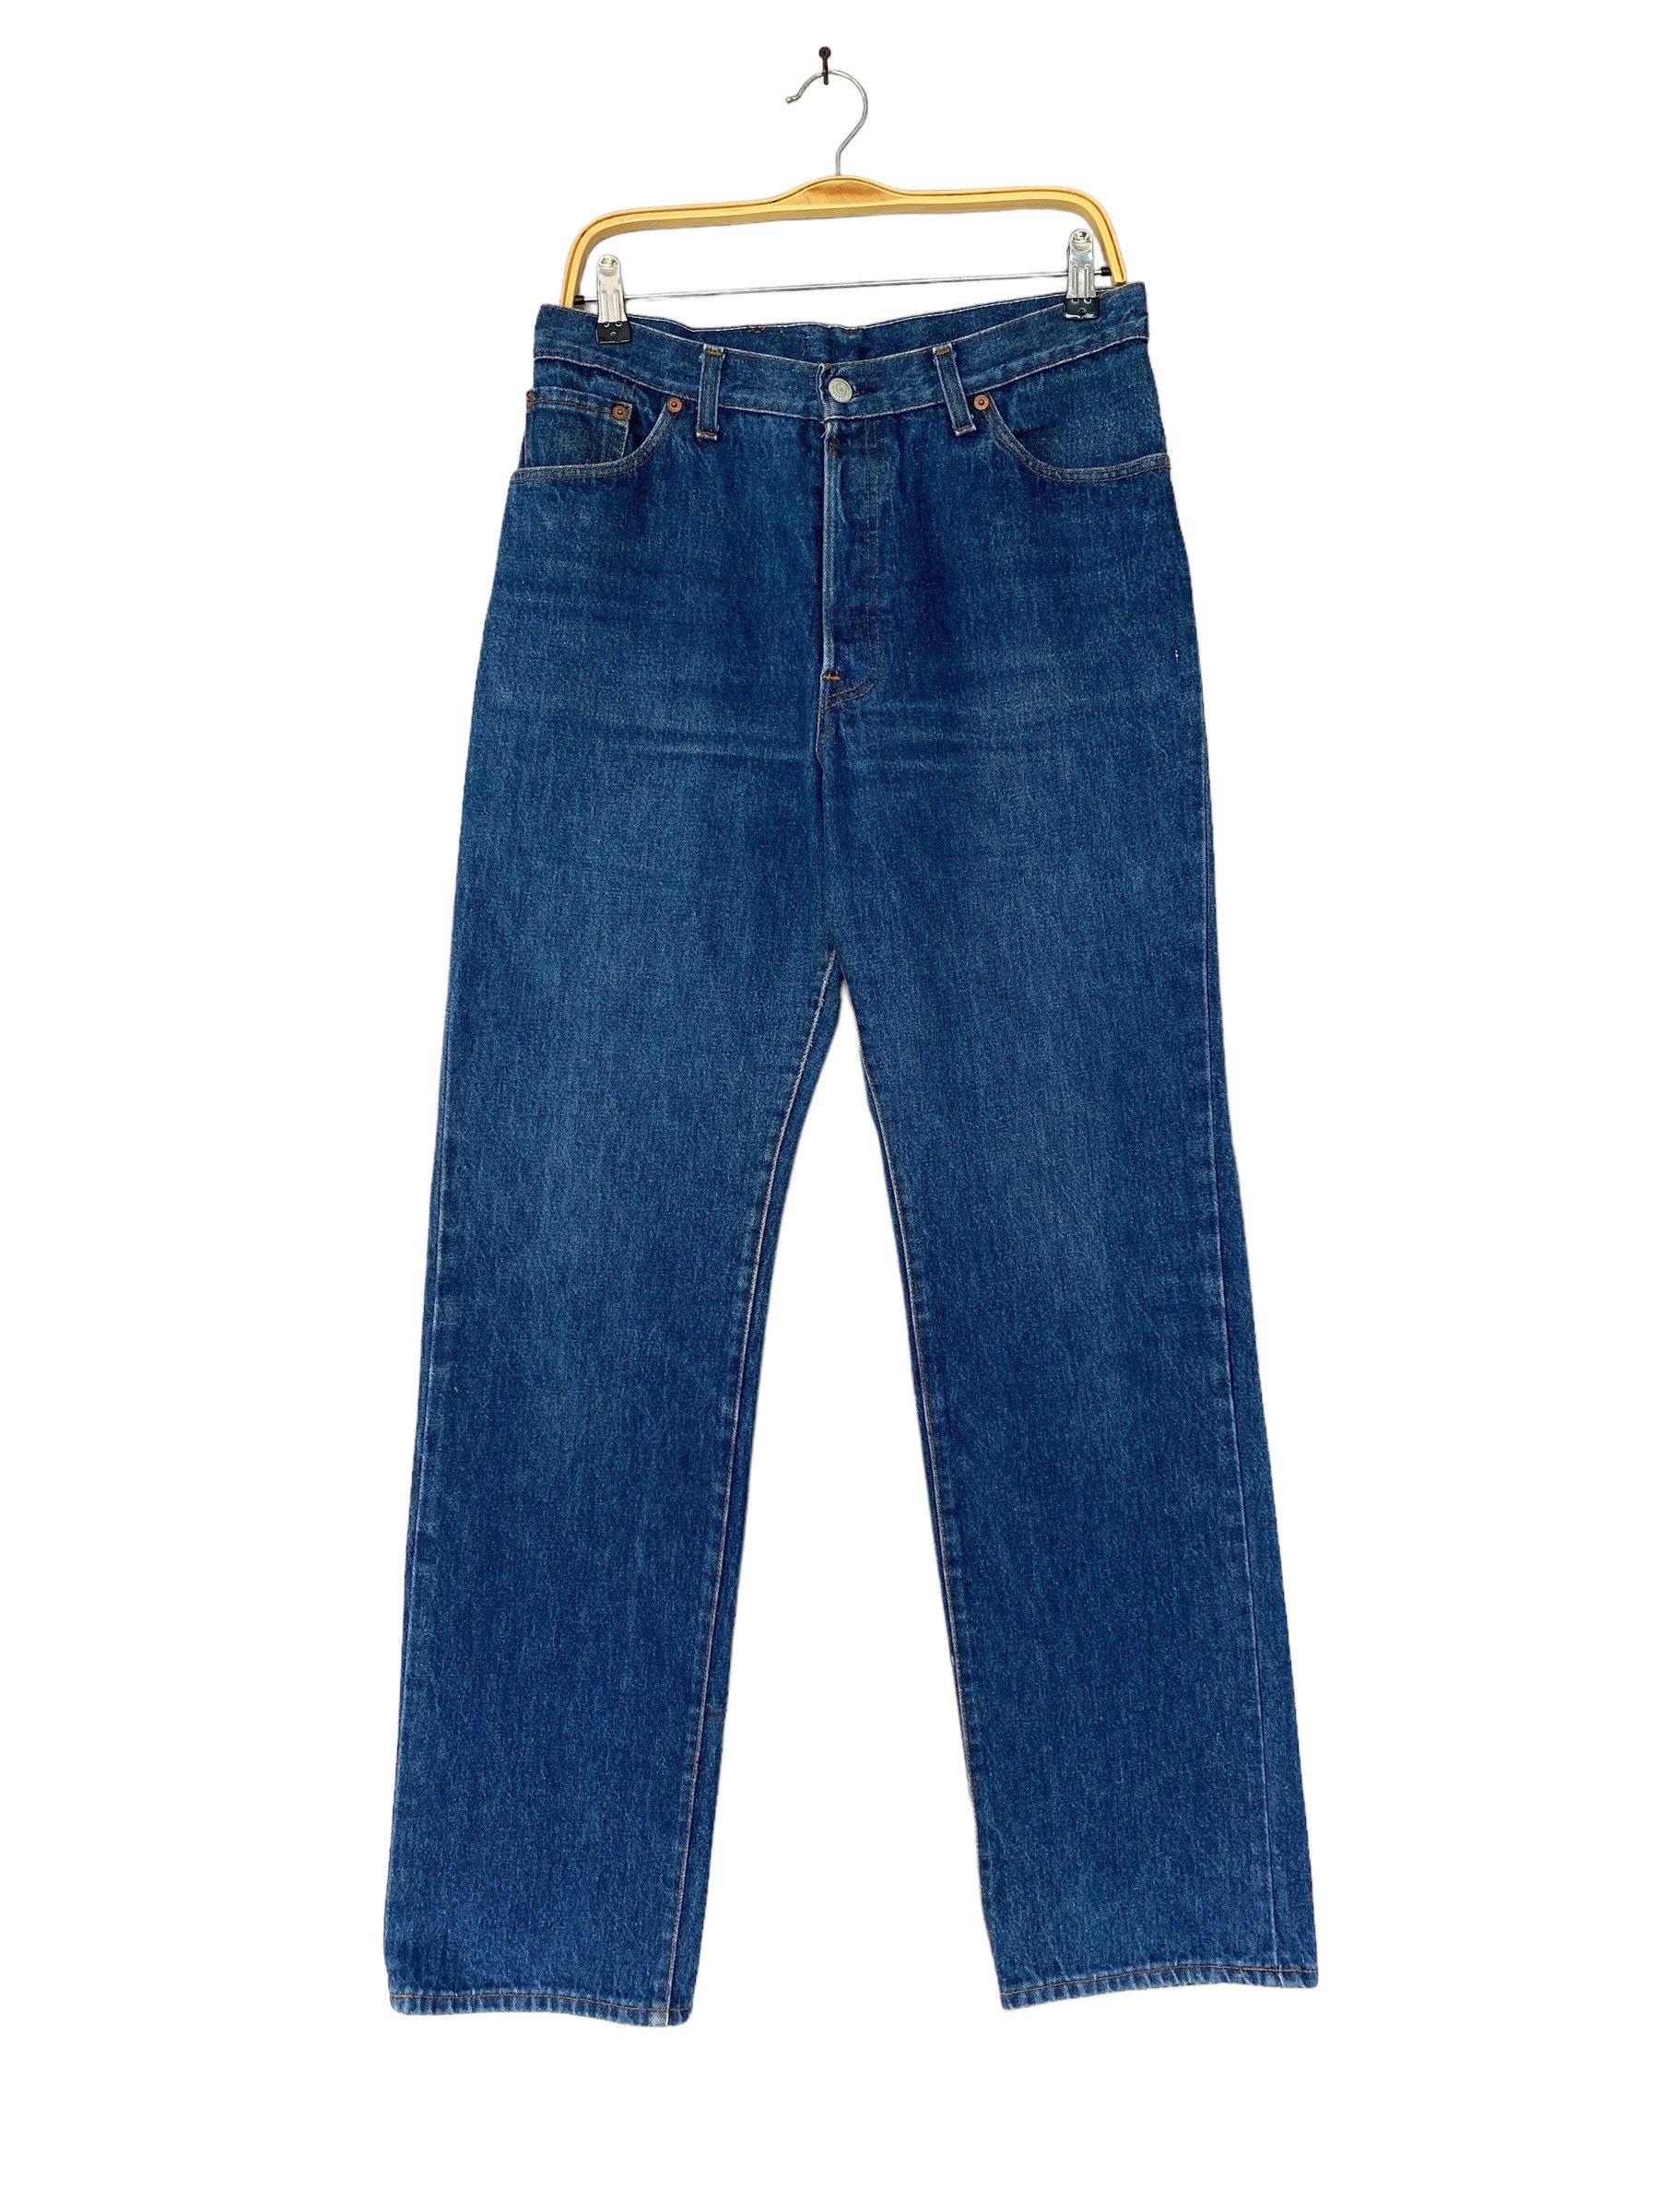 Vintage 80s Levis 501 Non Selvedge Jeans Distressed Denim Blue - Etsy